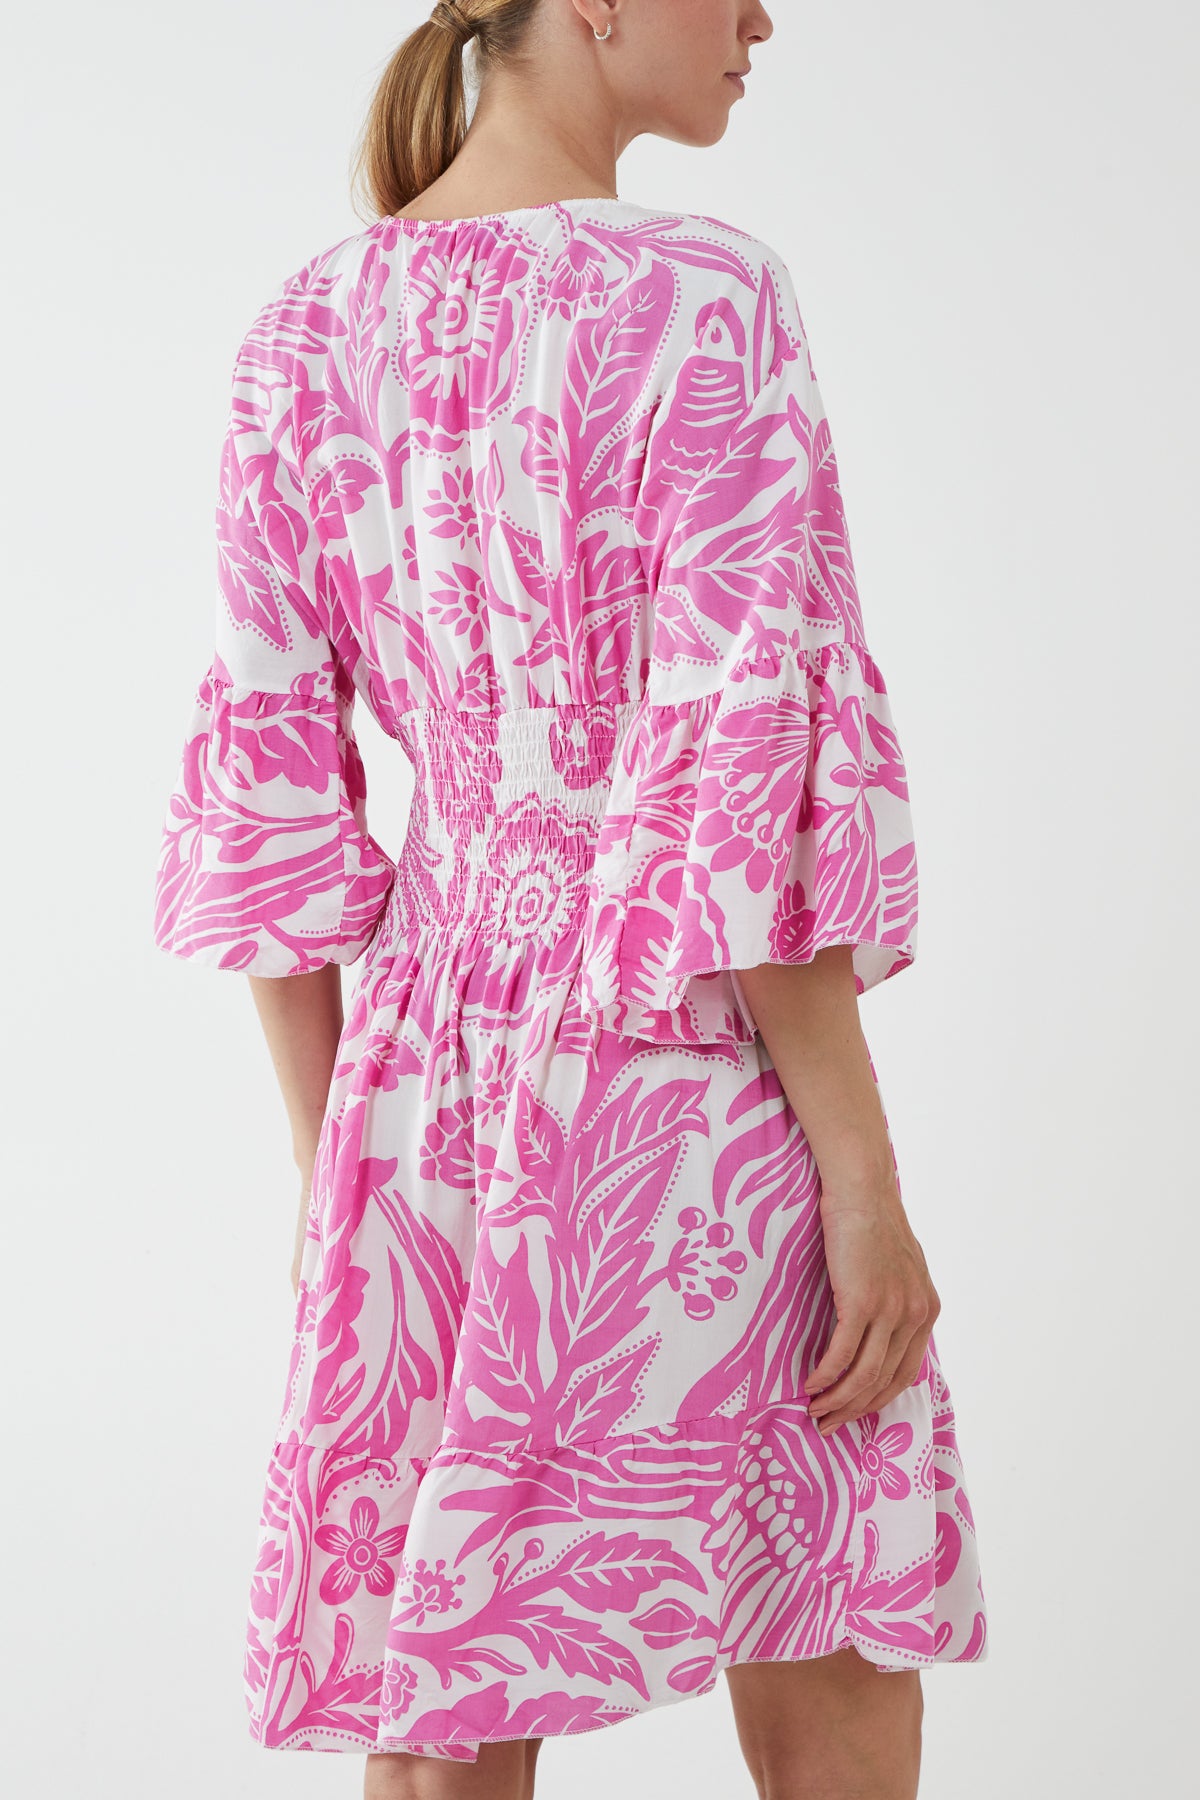 Monochromatic Floral Shirred Bodice Mini Dress